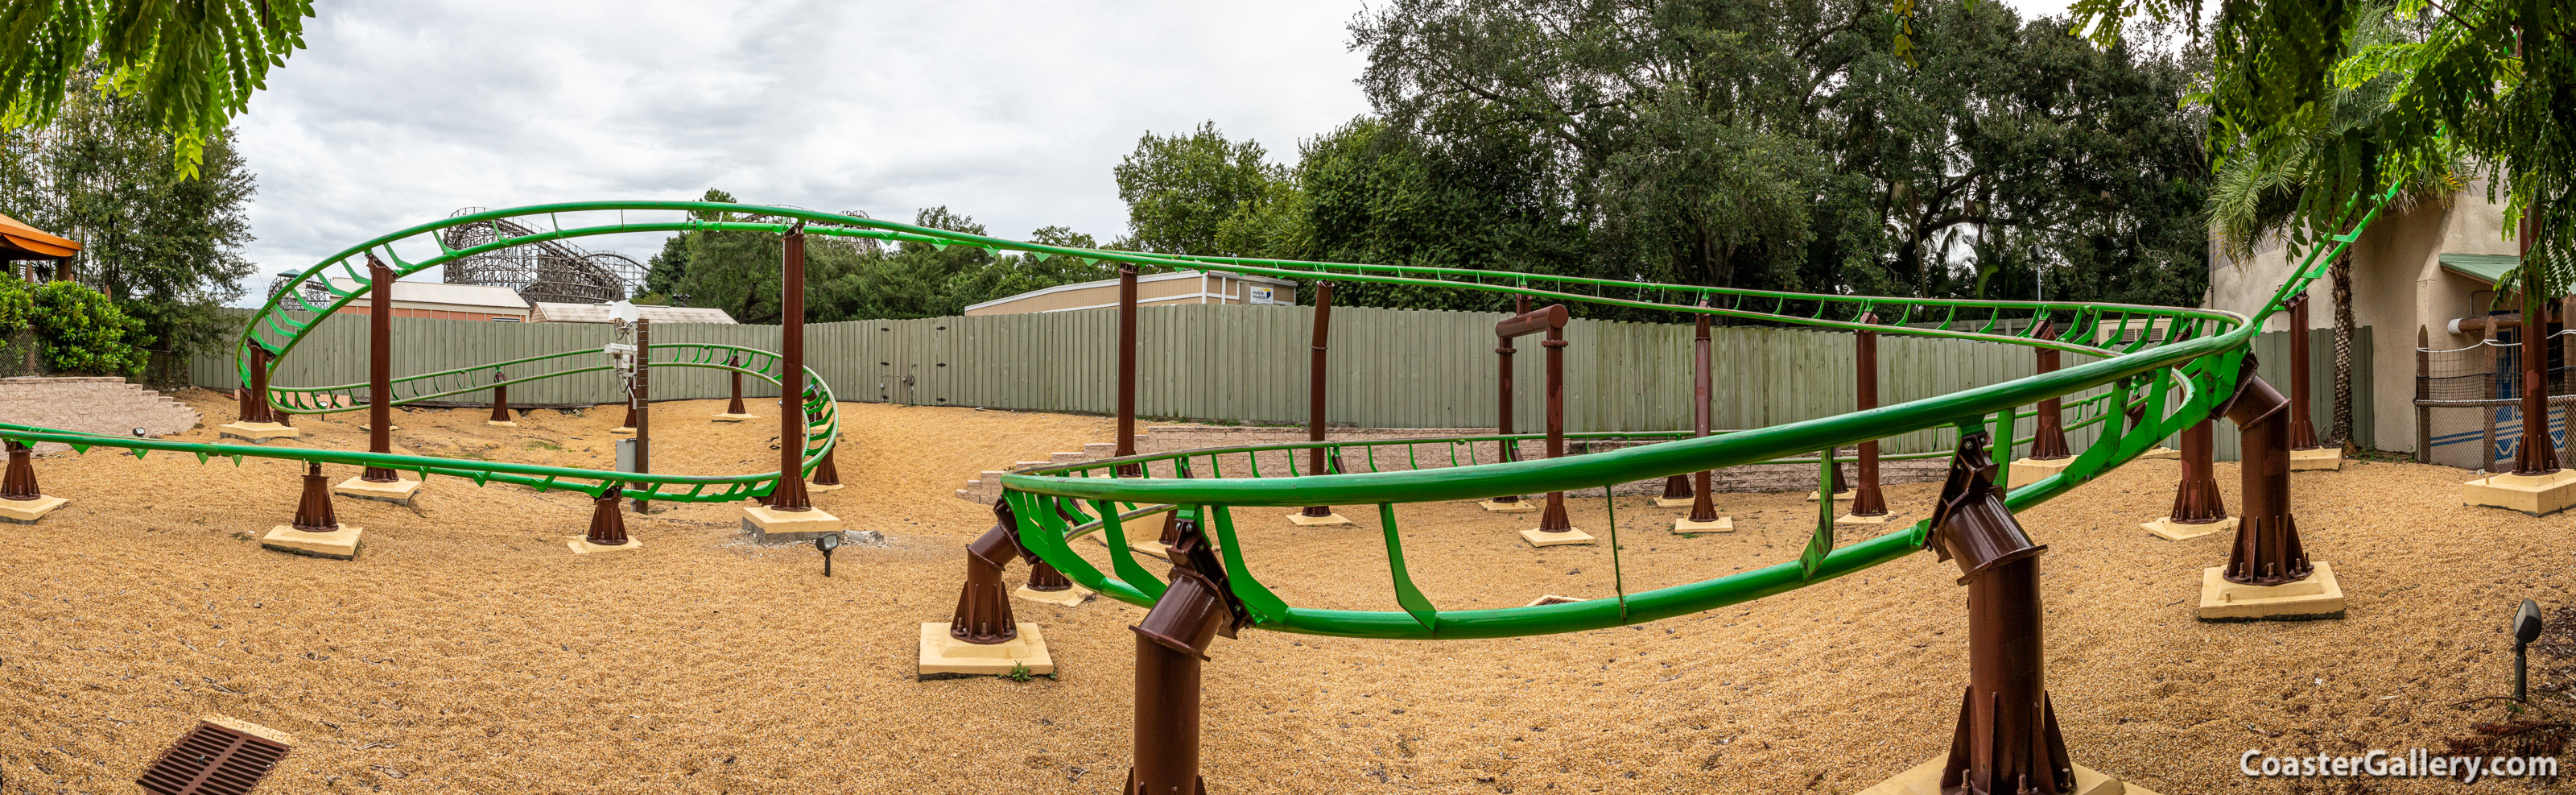 Air Grover roller coaster at Busch Gardens in Tampa, Florida